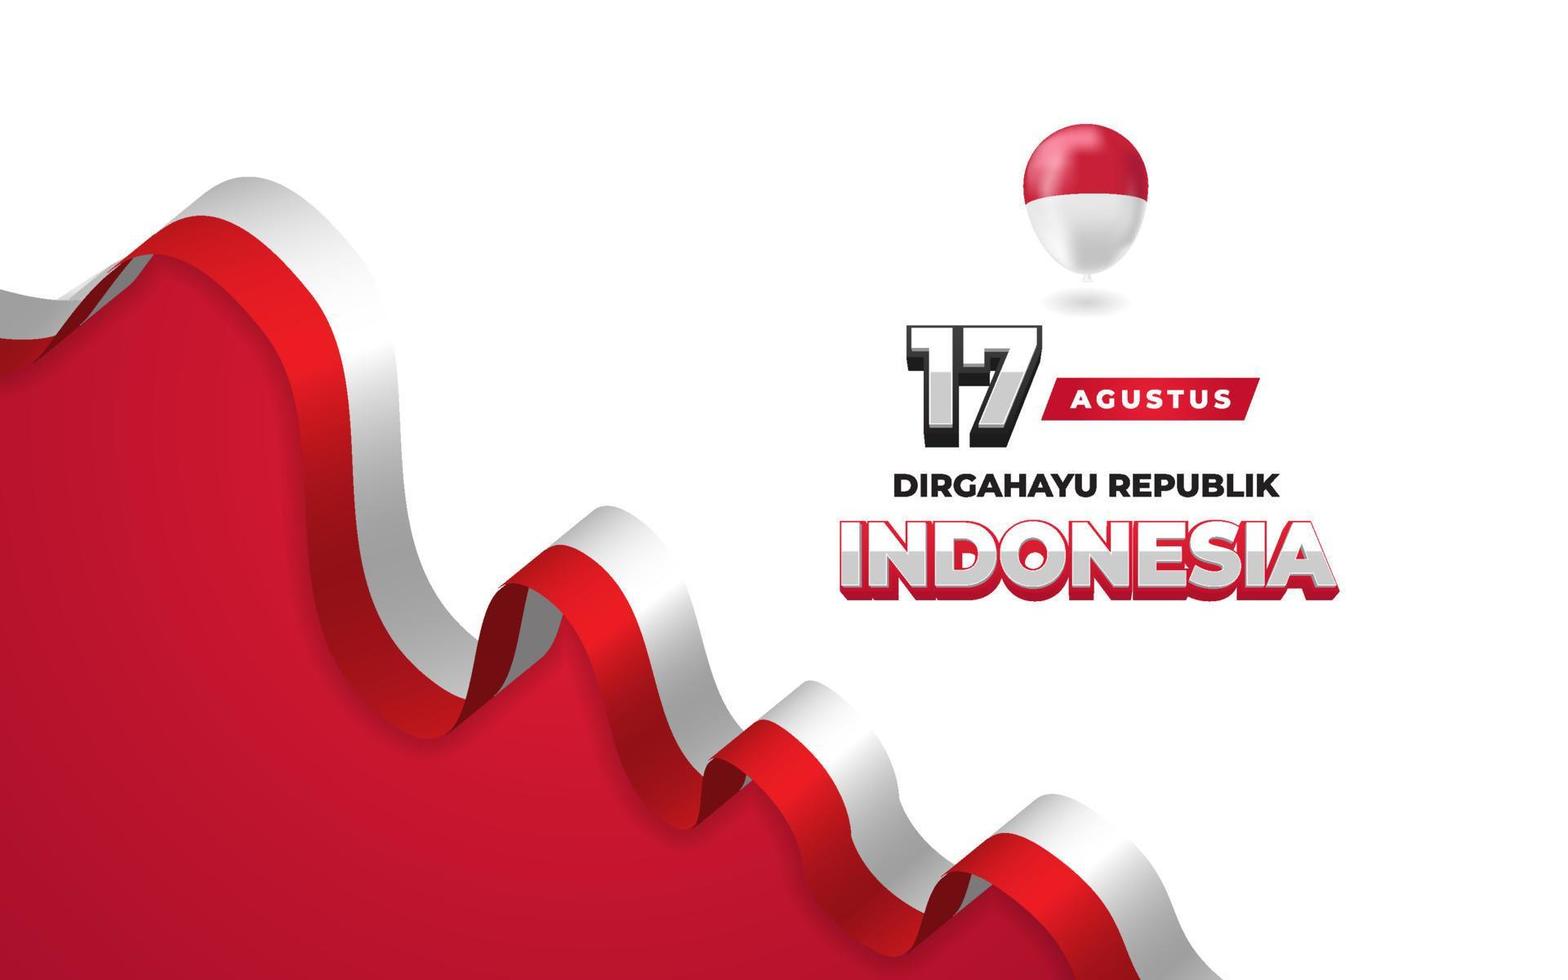 17 augusti indonesien självständighetsdagen gratulationskort banner vektor